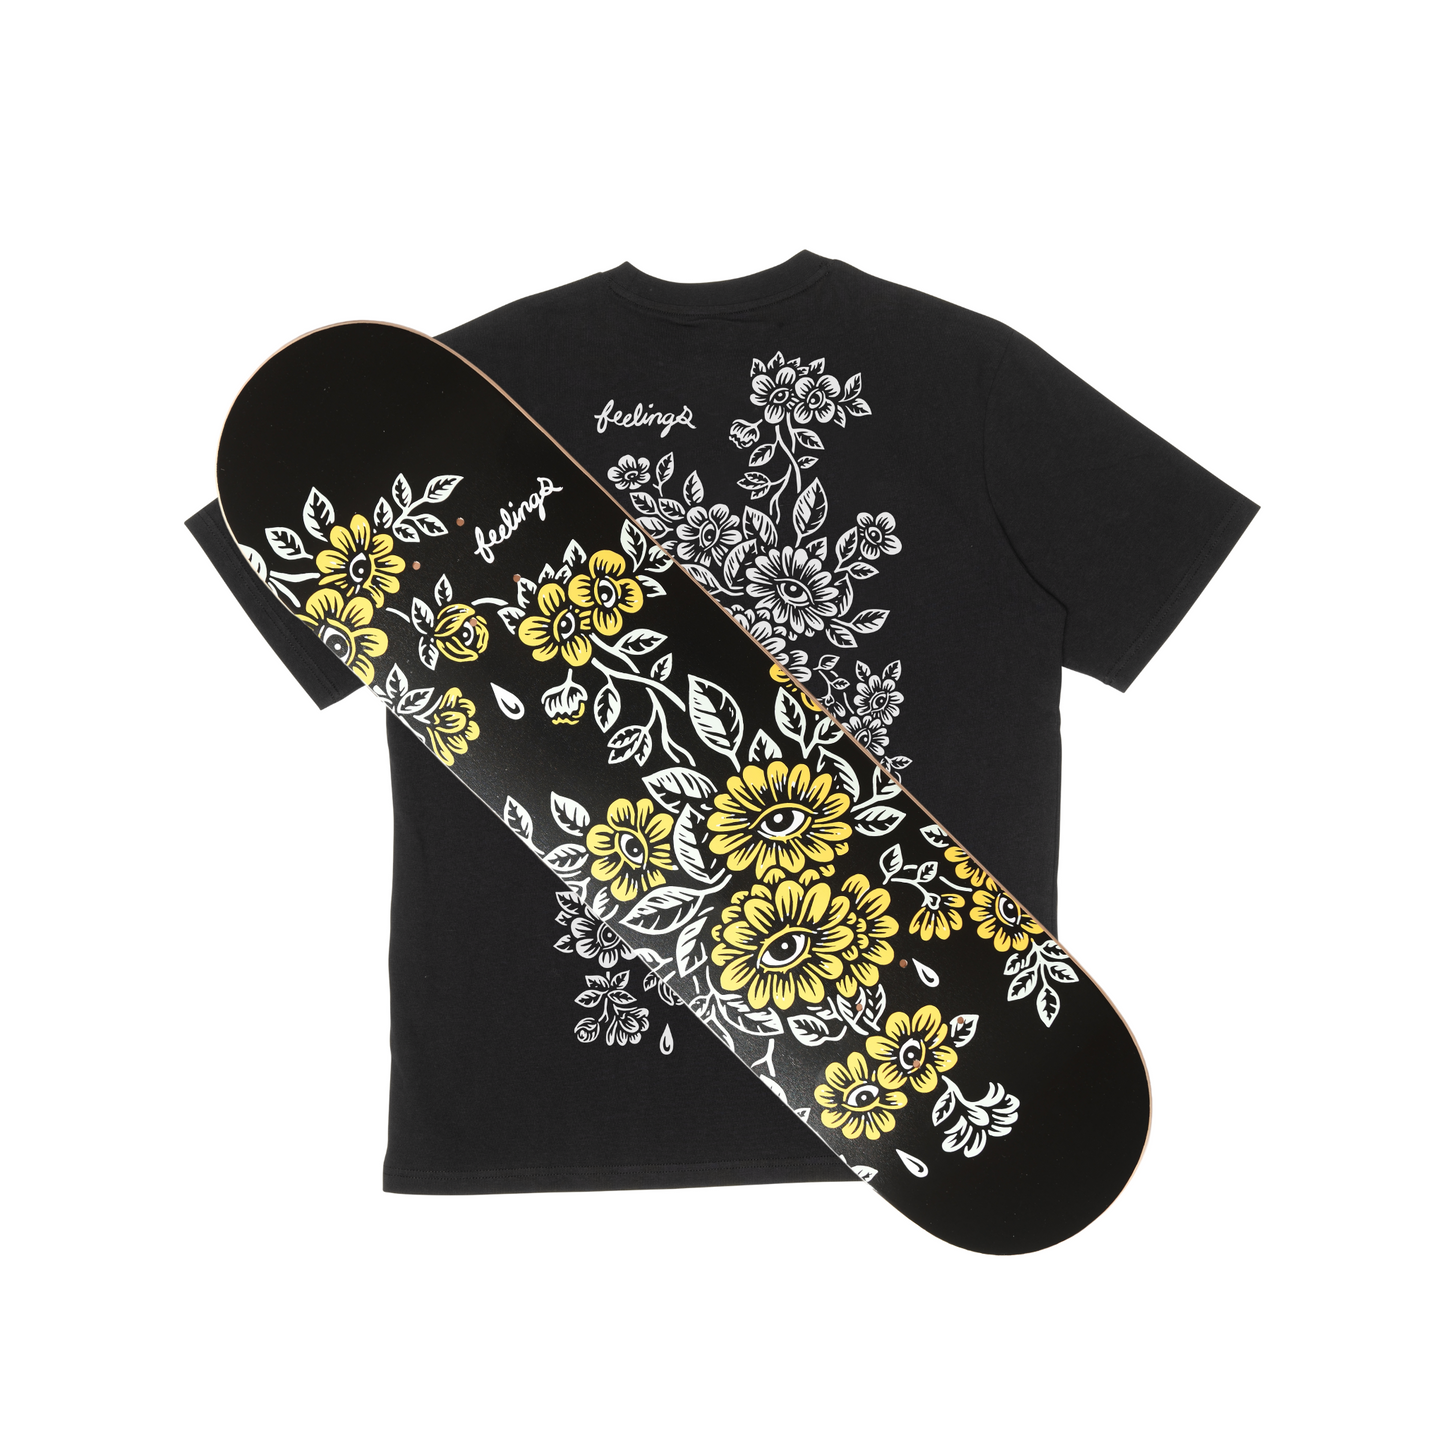 Planche de skateboard florale taille 8,25